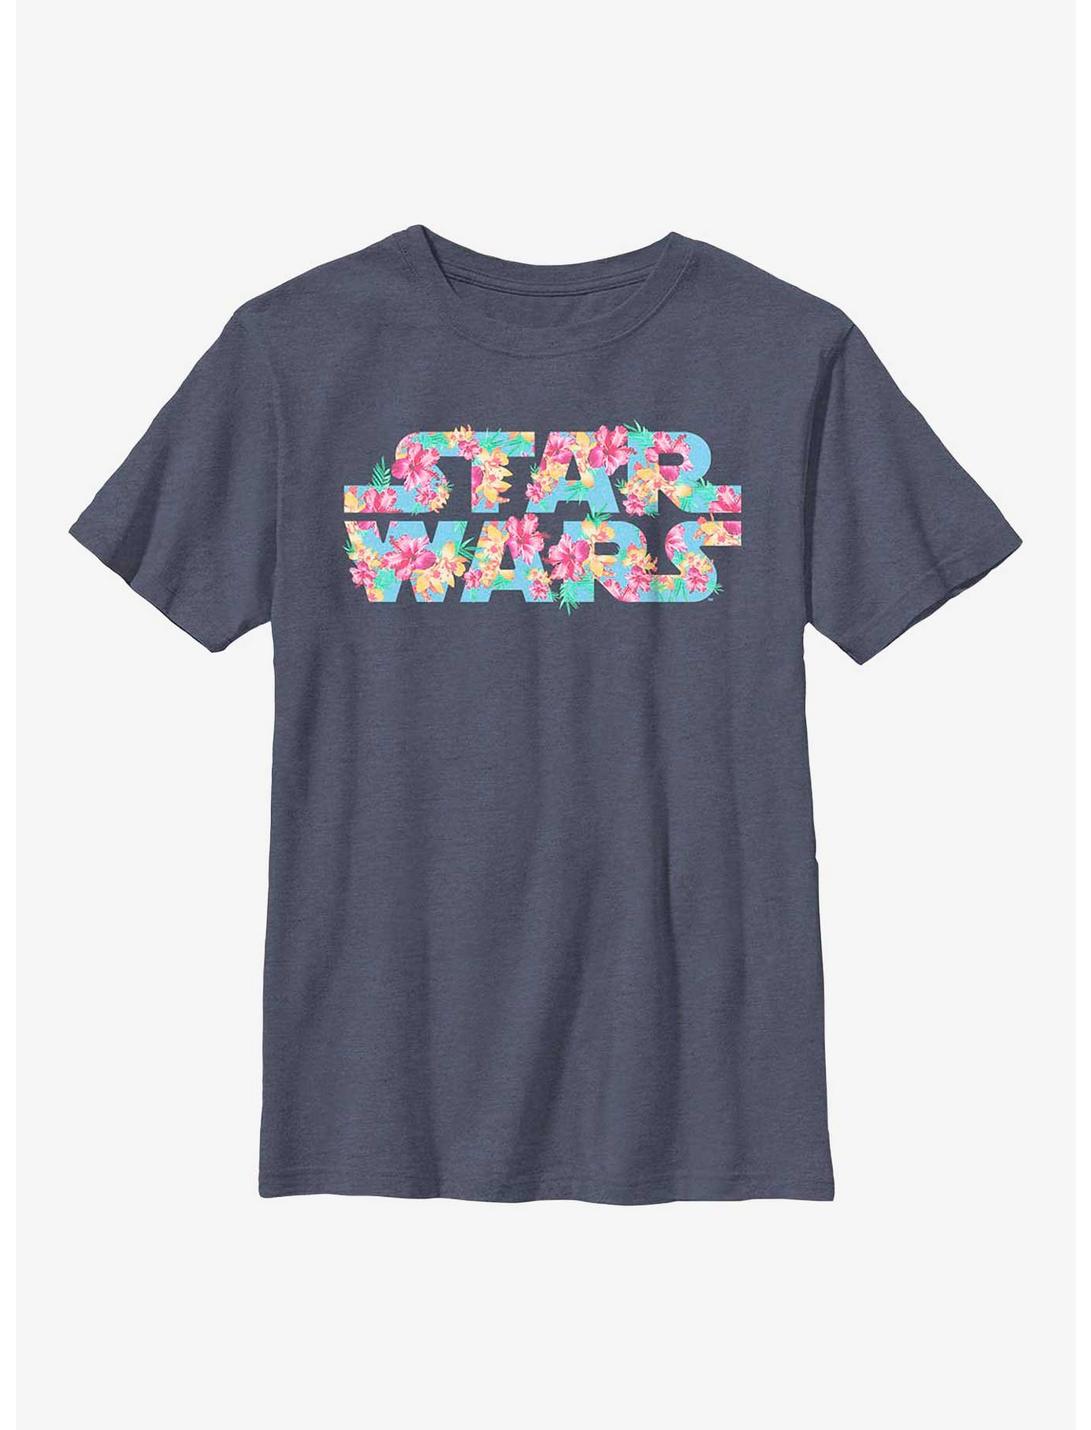 Star Wars Floral Logo Youth T-Shirt, NAVY HTR, hi-res